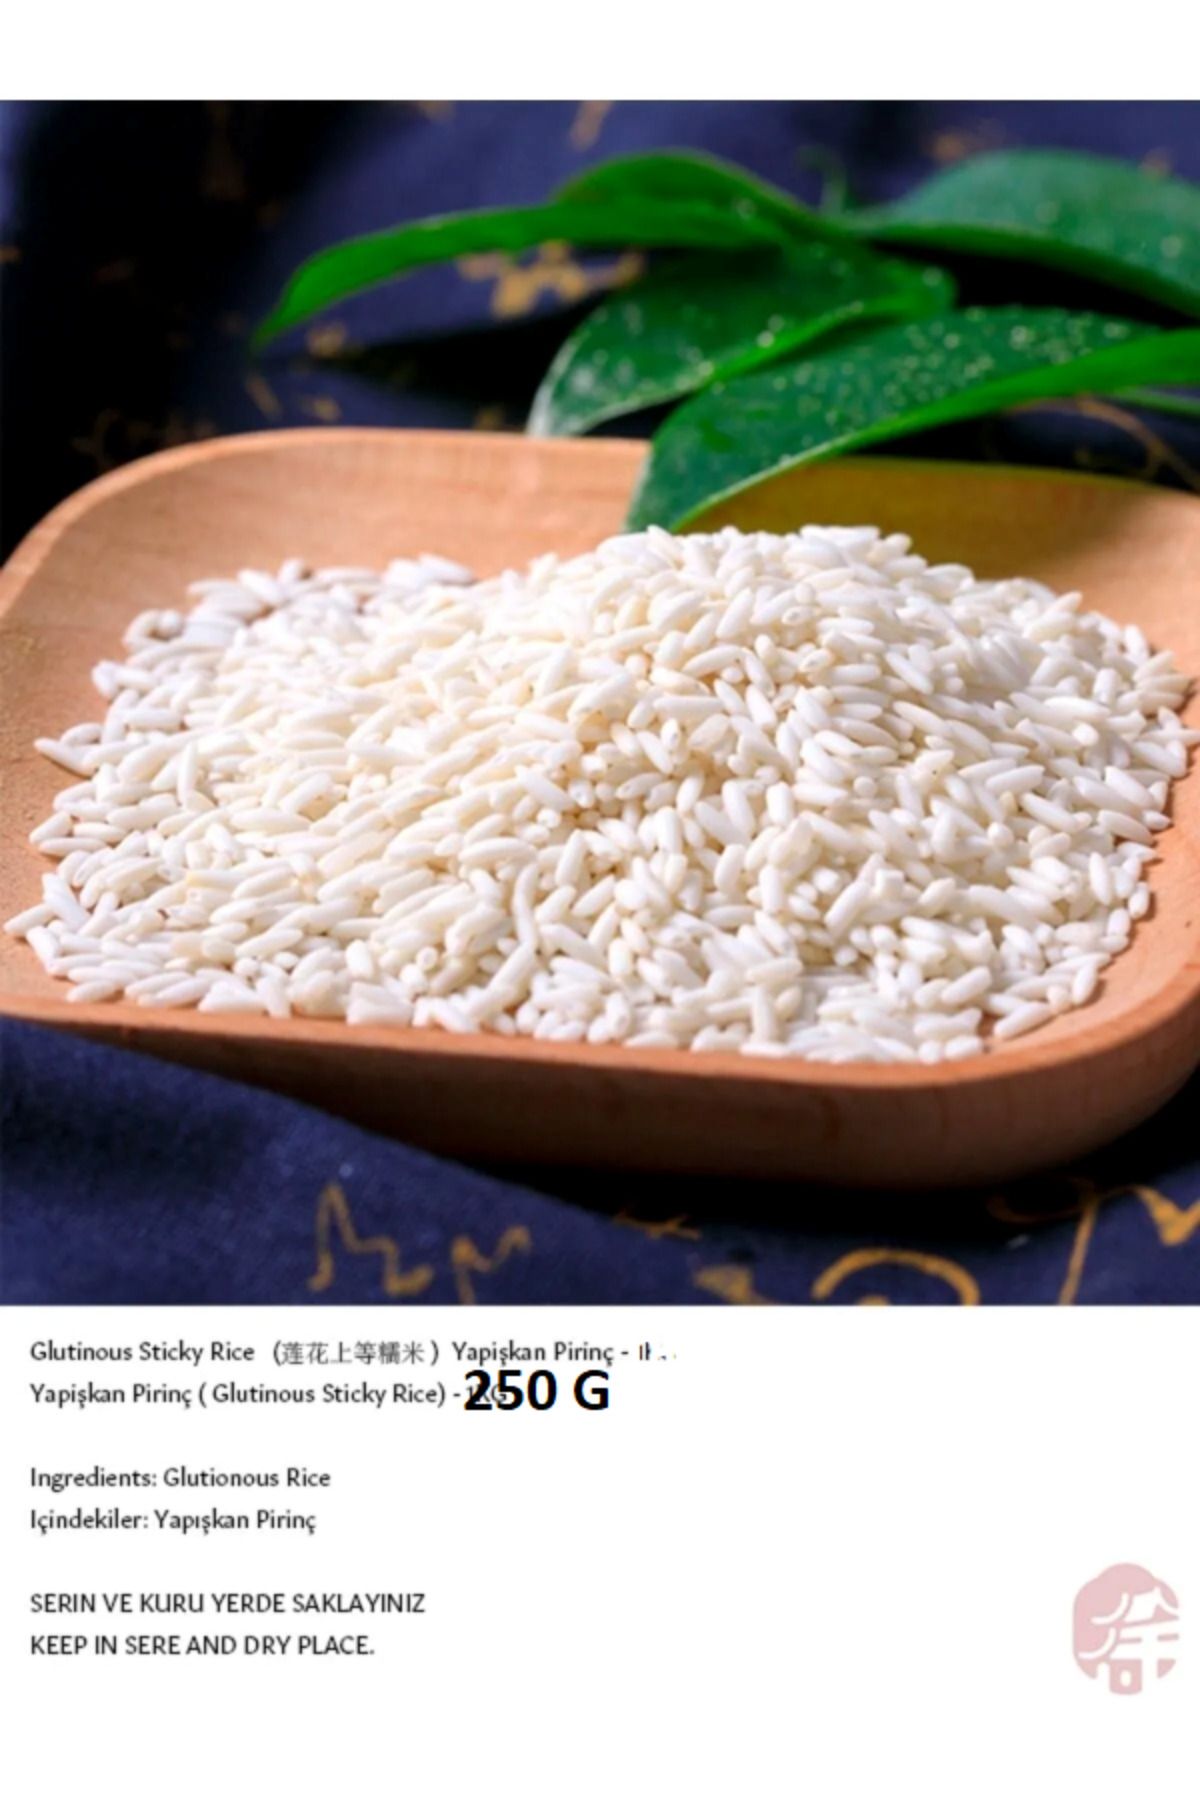 Lotus Yapişkan Pirinç ( Glutinous Sticky Rice) - 250g